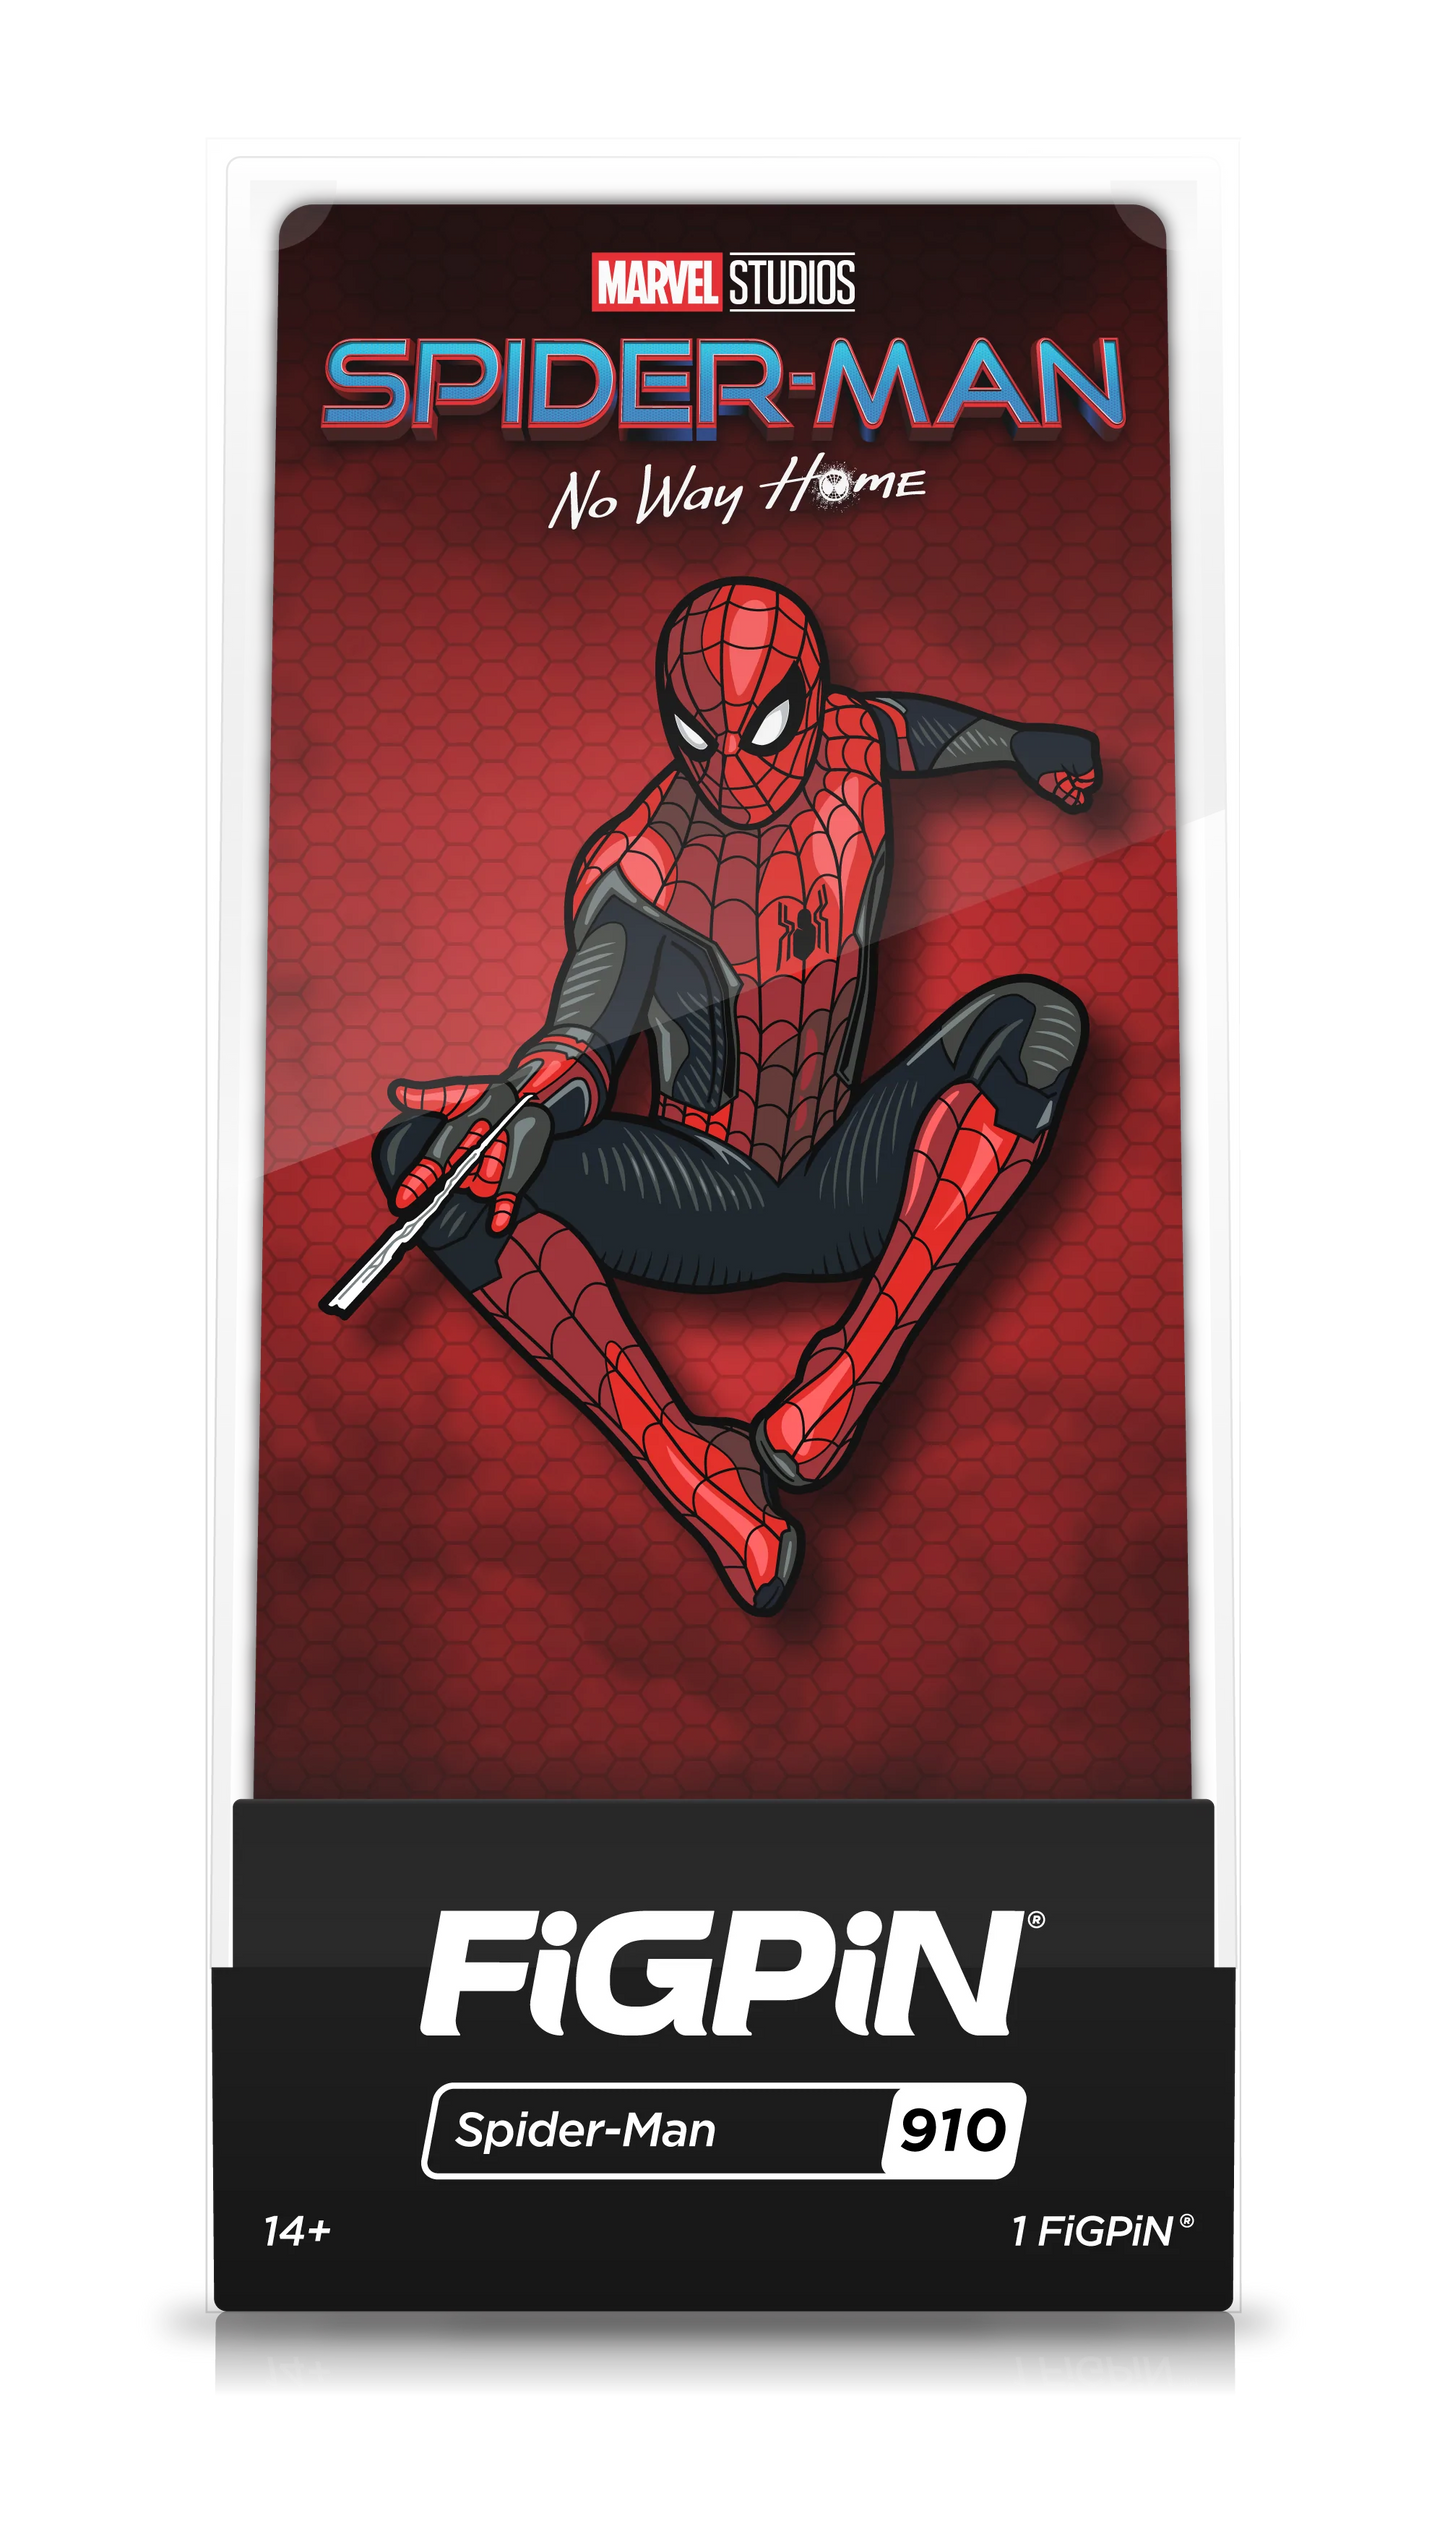 FiGPiN Spider-Man (910) Property: Spider-Man: No Way Home Movie